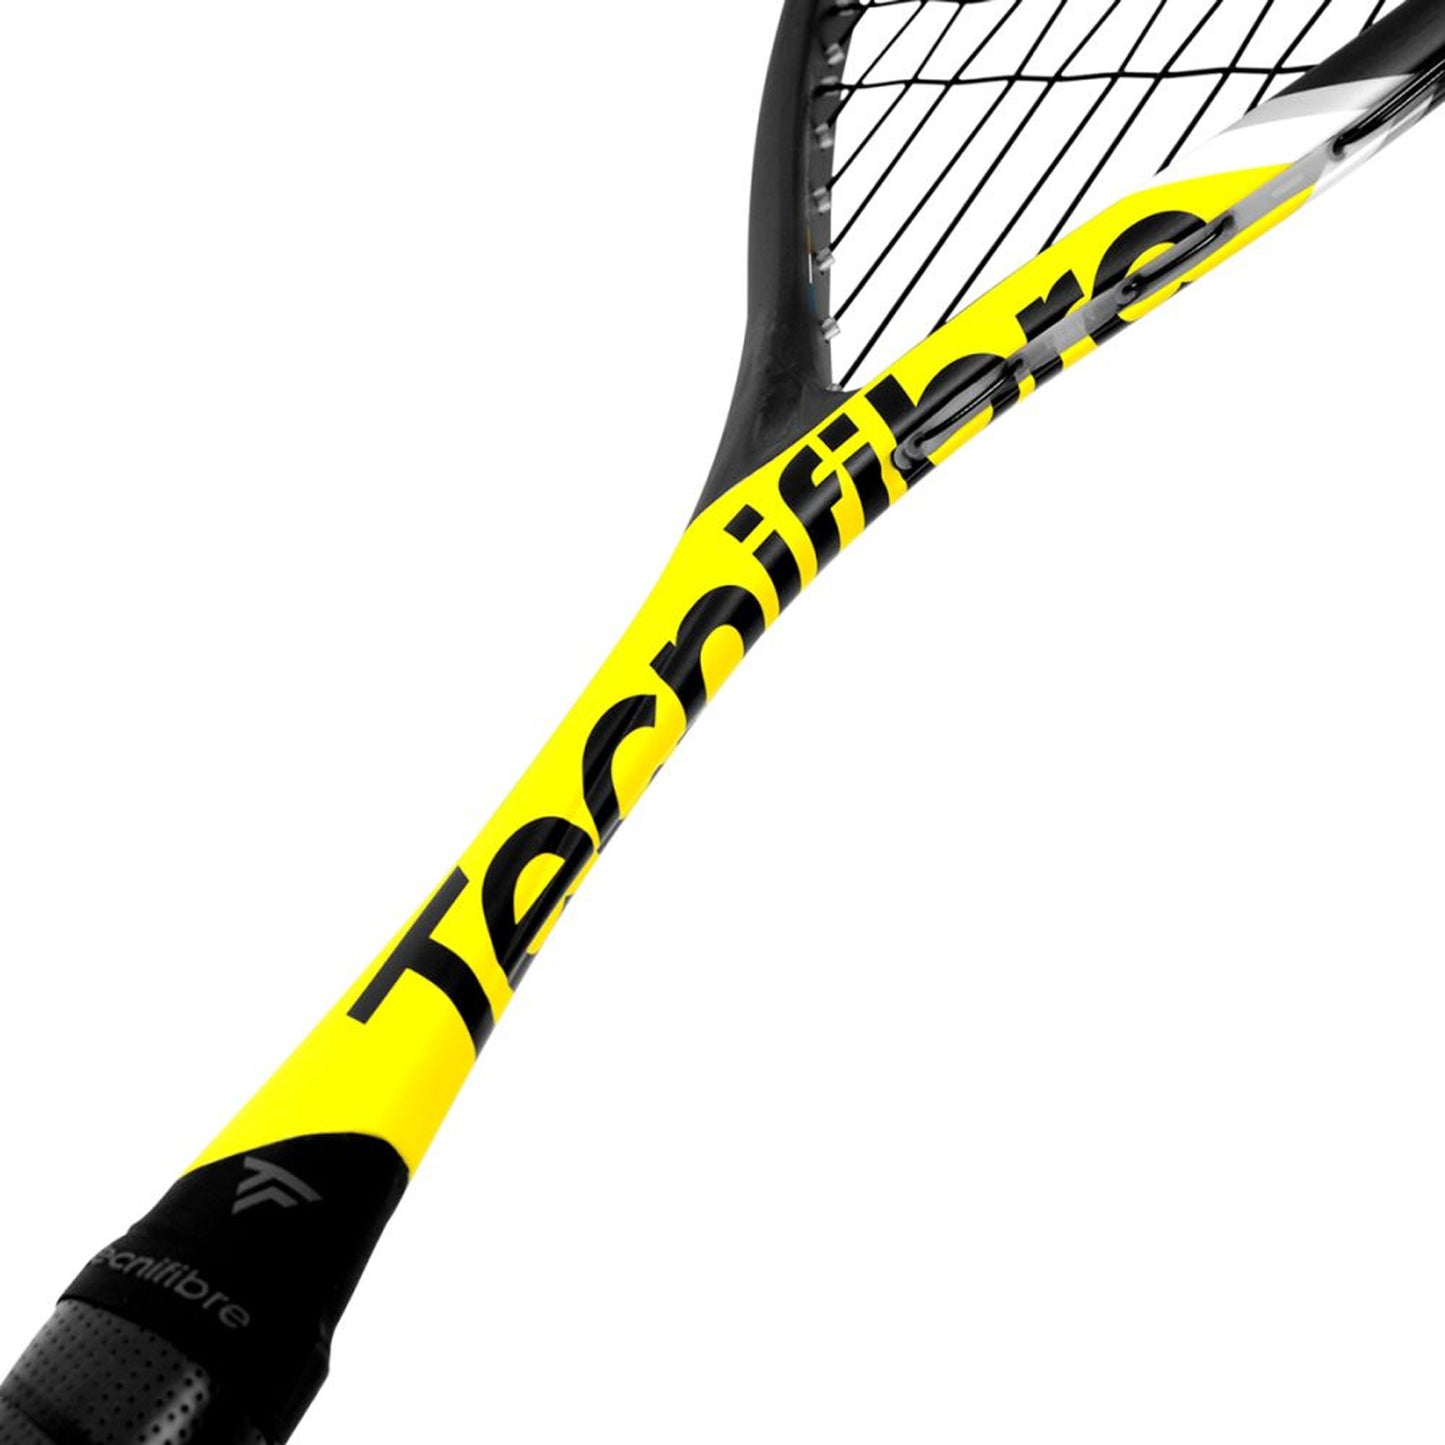 Tecnifibre Carboflex 125 Heritage 2 Squash Racquet - Best Price online Prokicksports.com